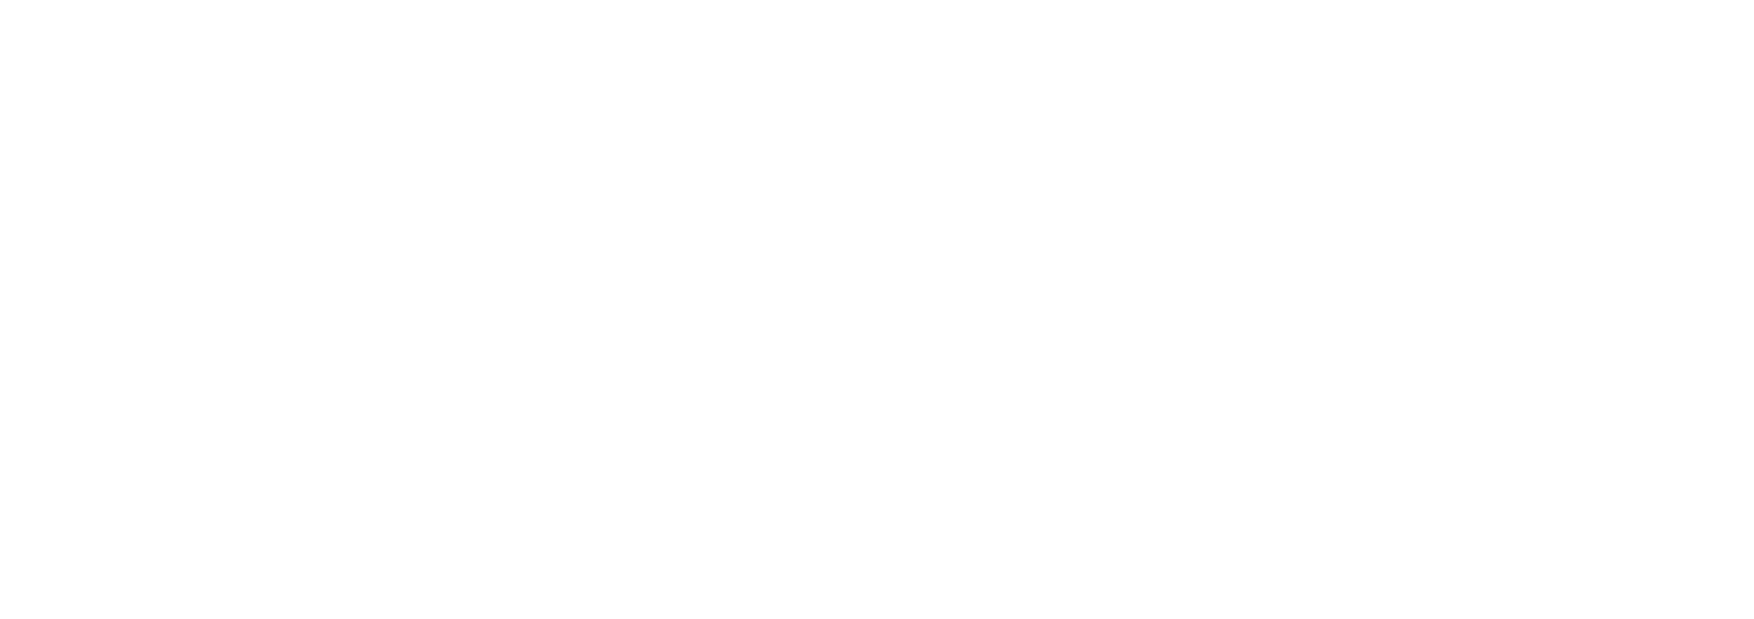 Murder in the Vineyard logo